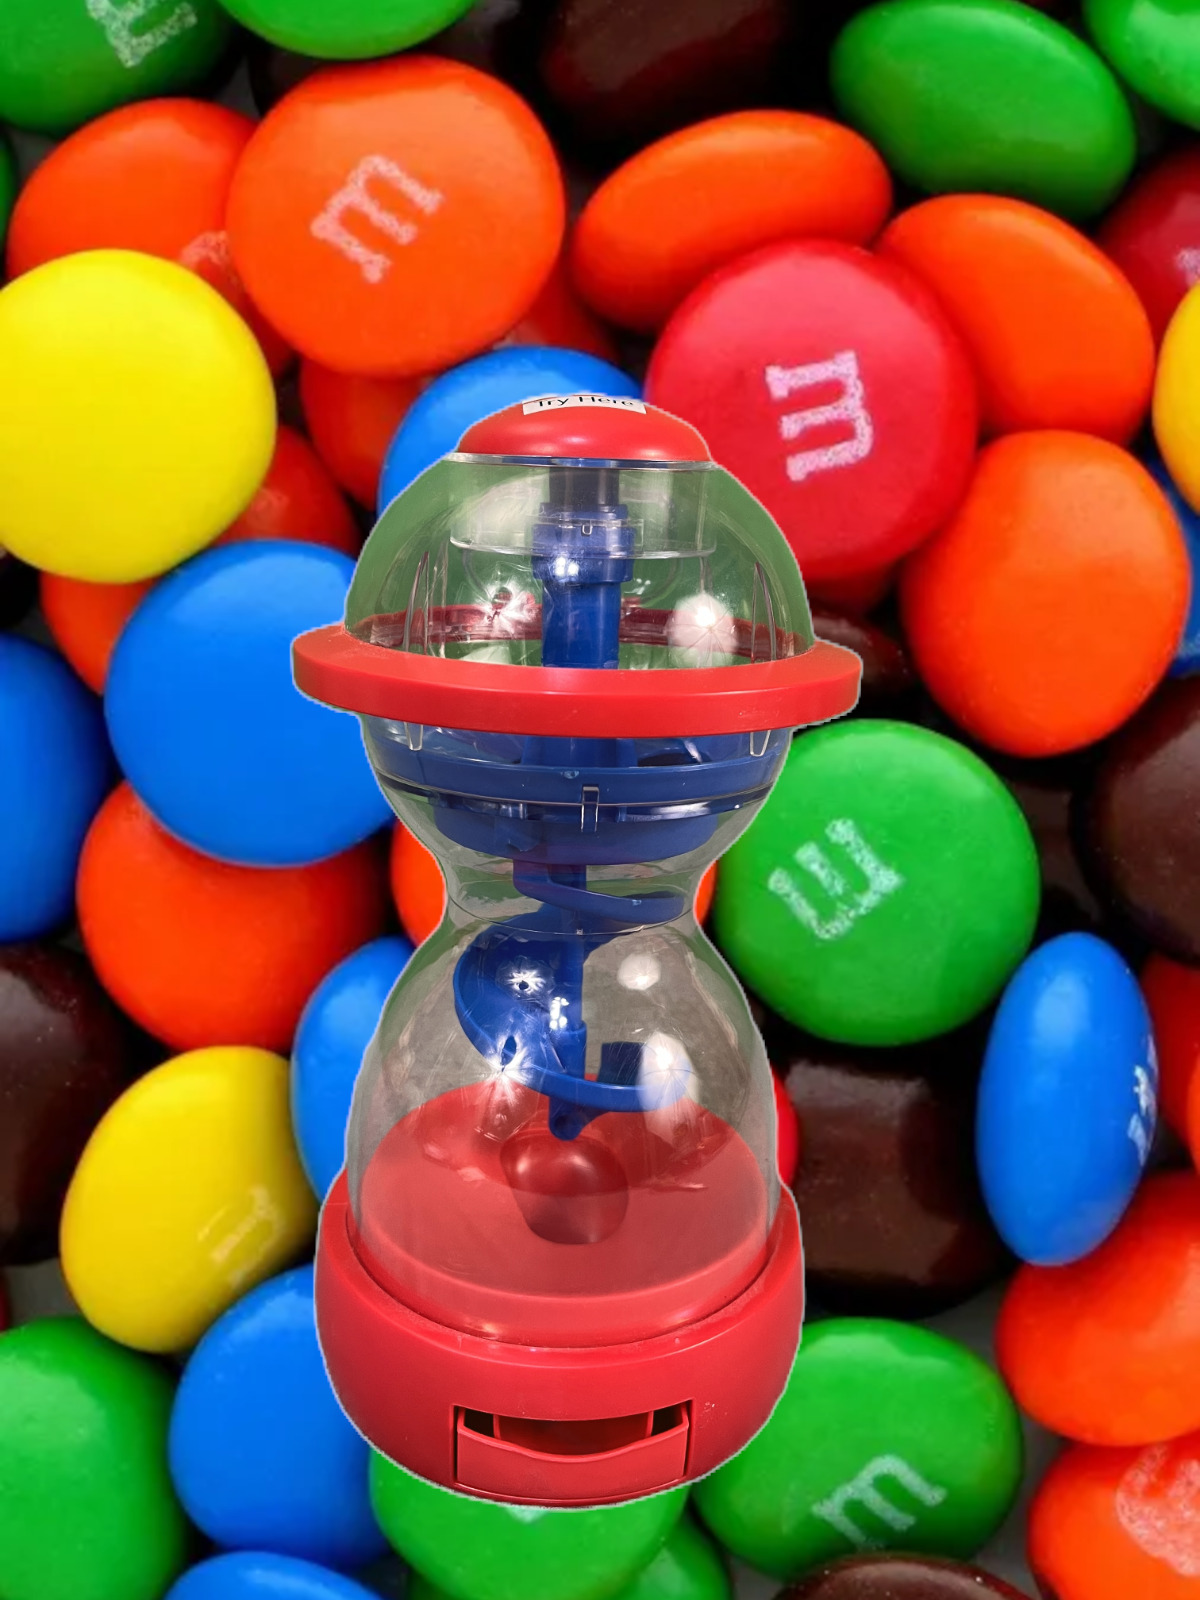 M&M’s fun machine candy dispenser 9.5 in